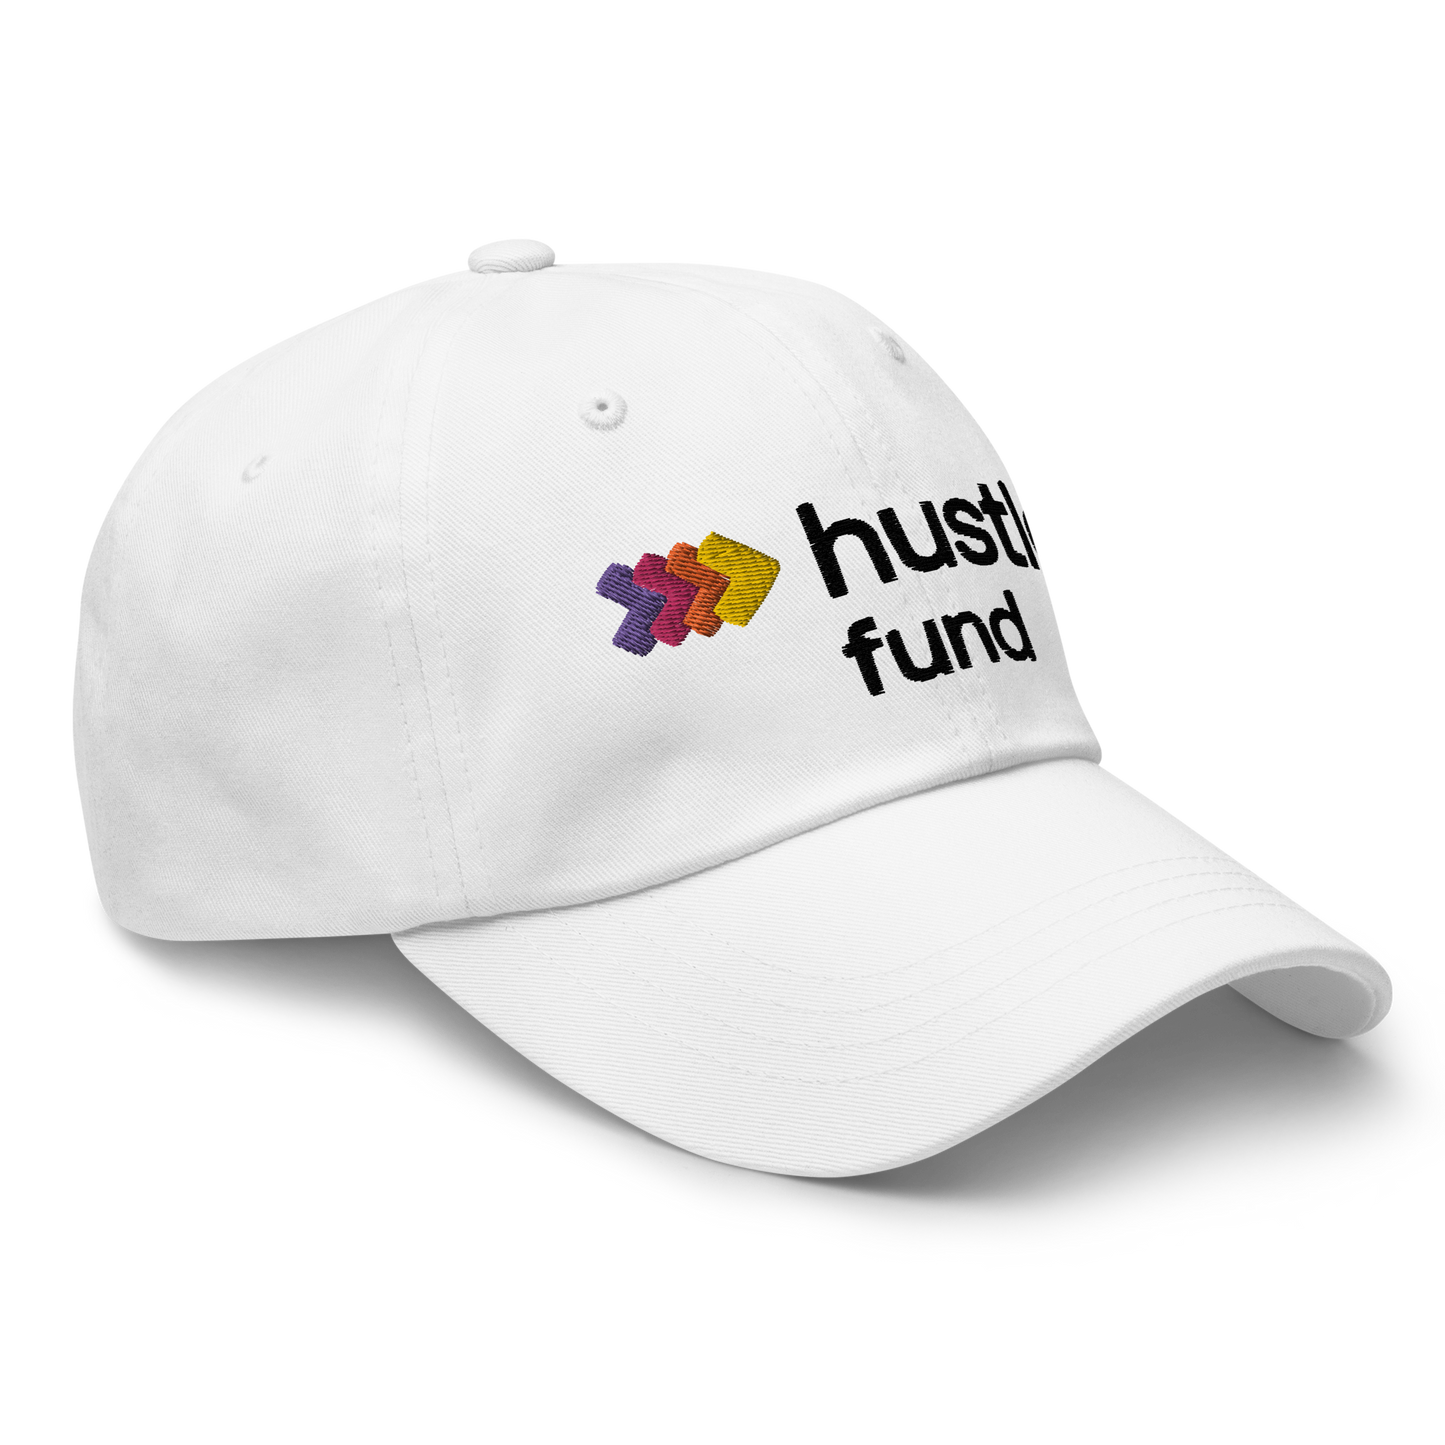 Hustle Fund Dad Hat